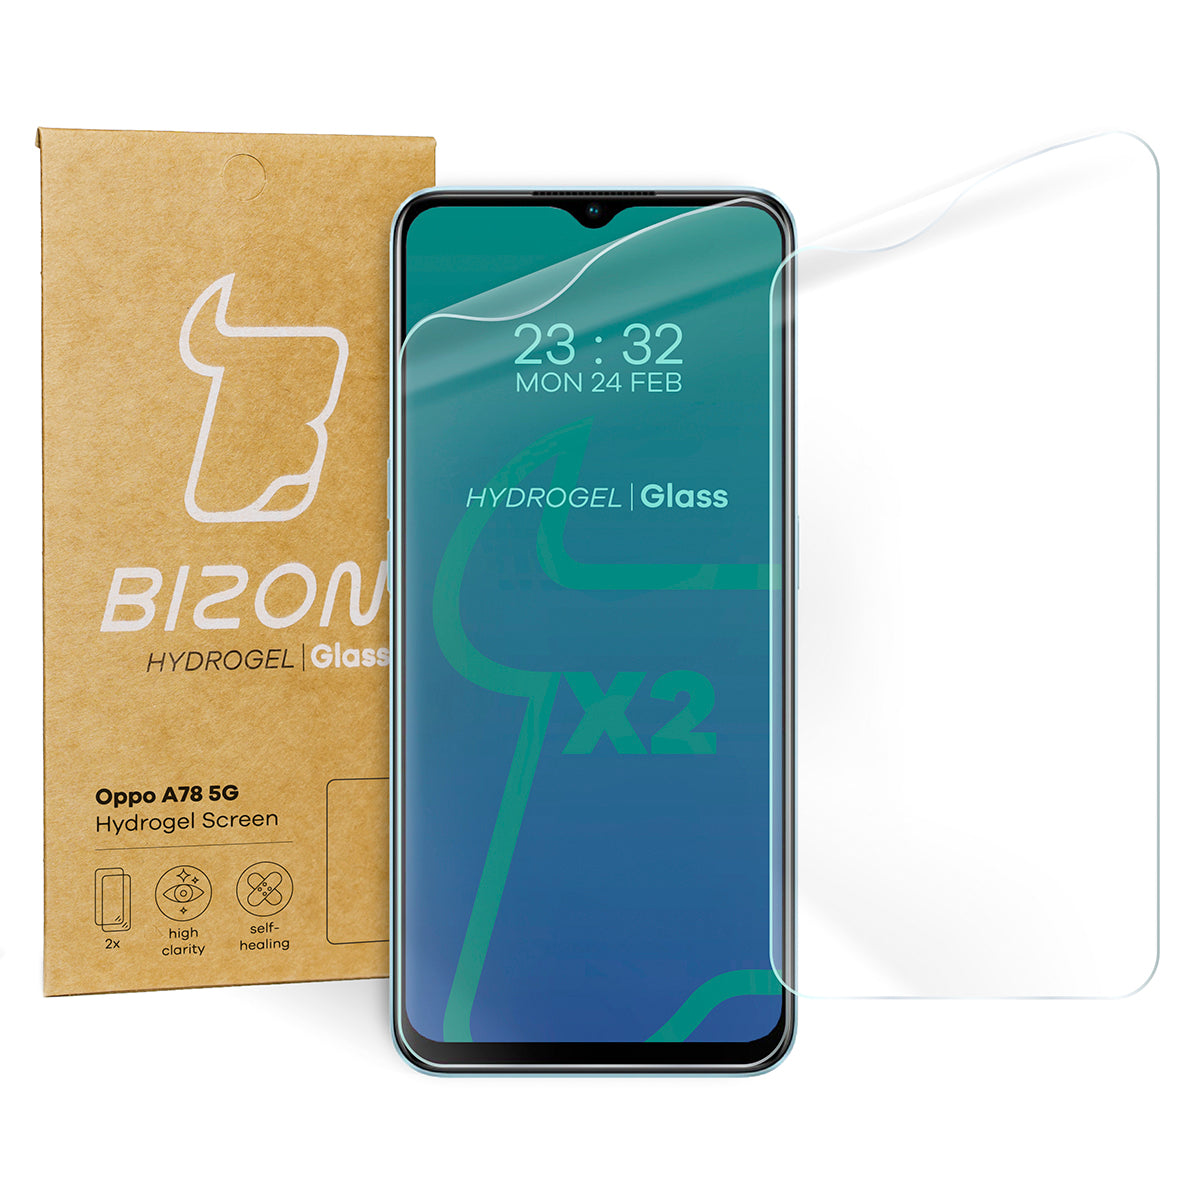 Hydrogel Folie für den Bildschirm Bizon Glass Hydrogel für Oppo A78 5G, 2 Stück